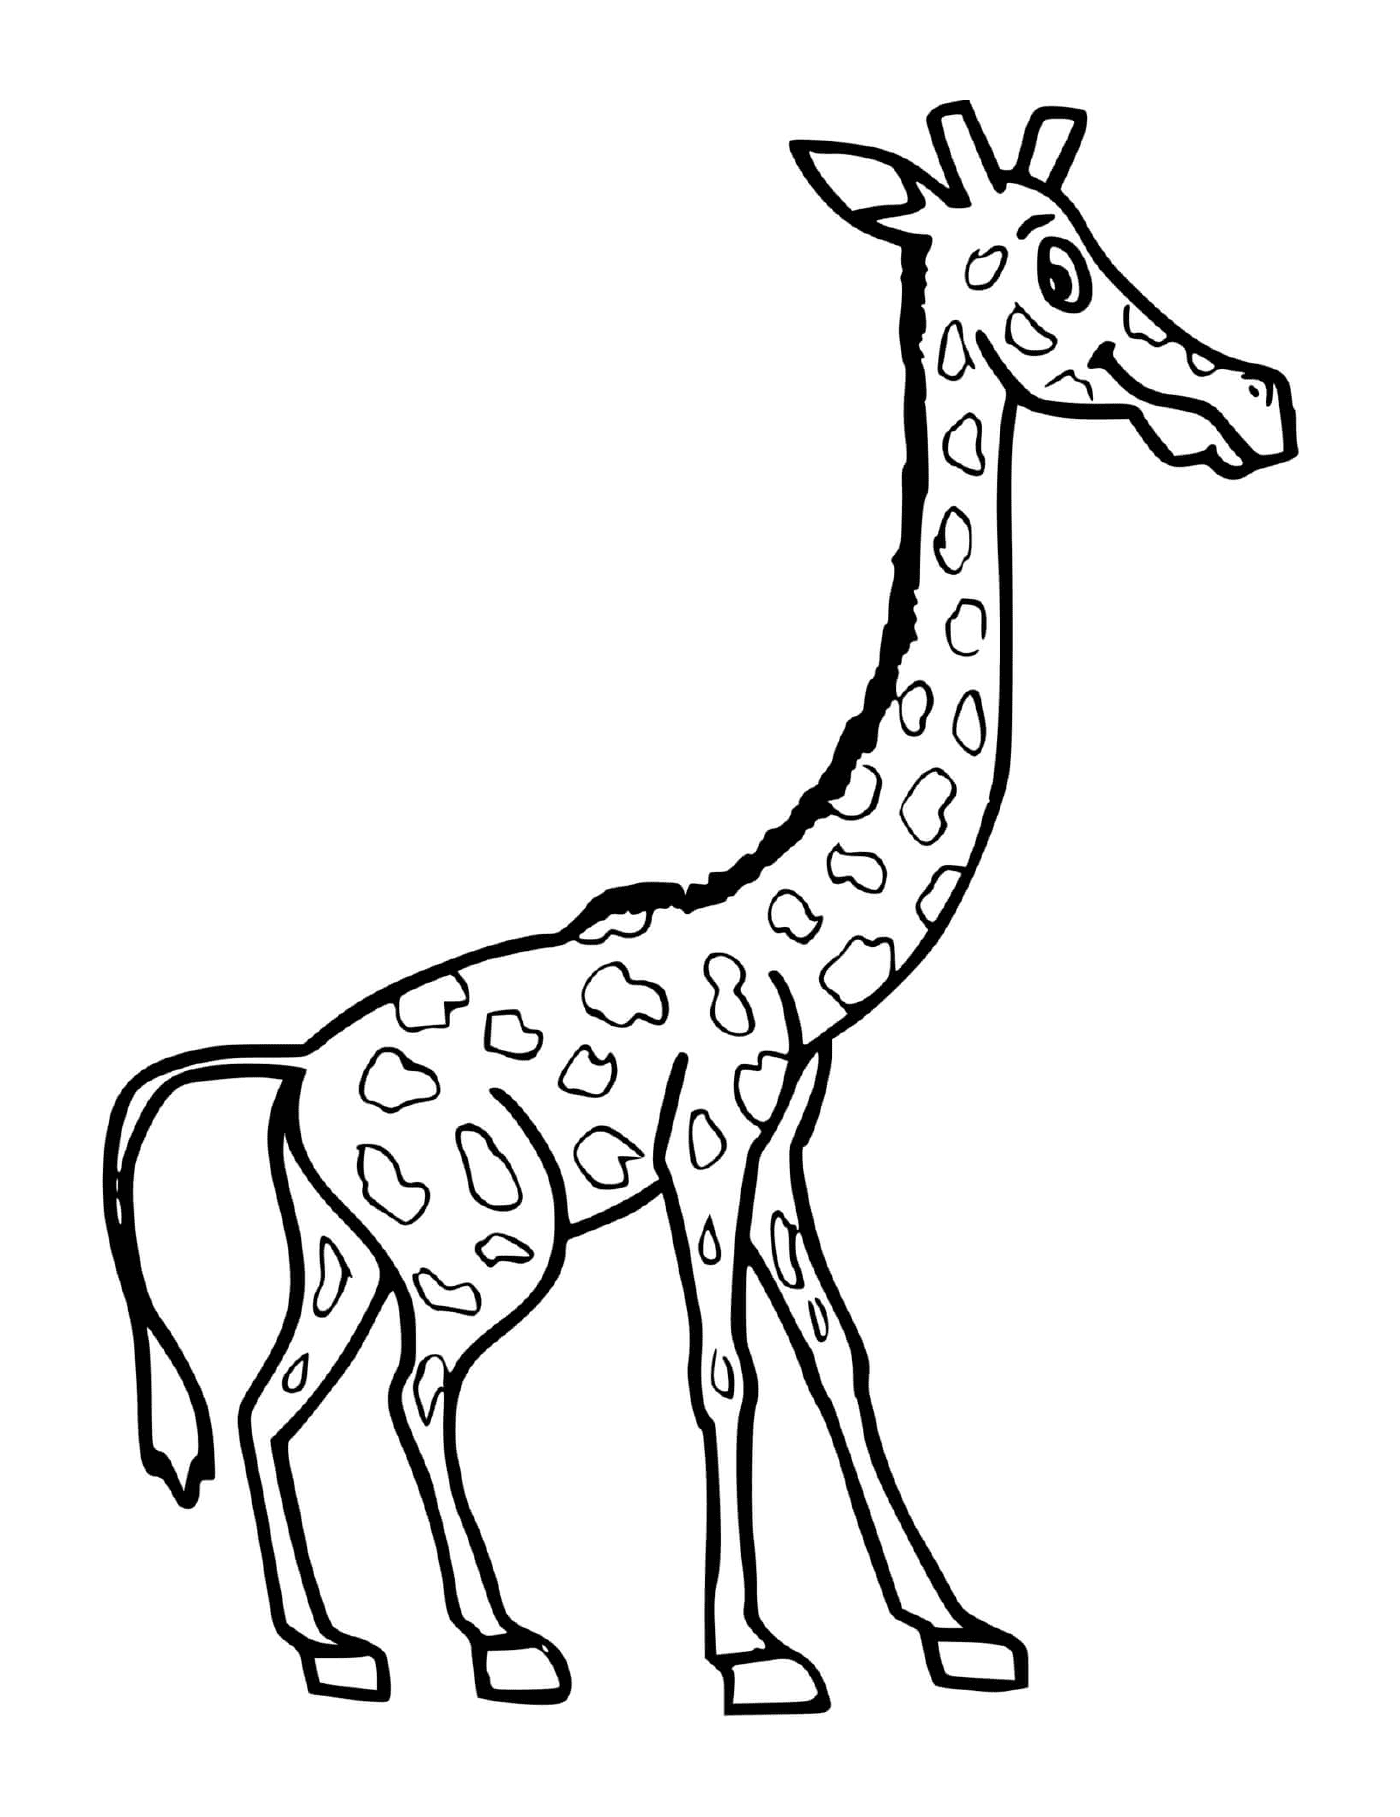  Una gran jirafa 